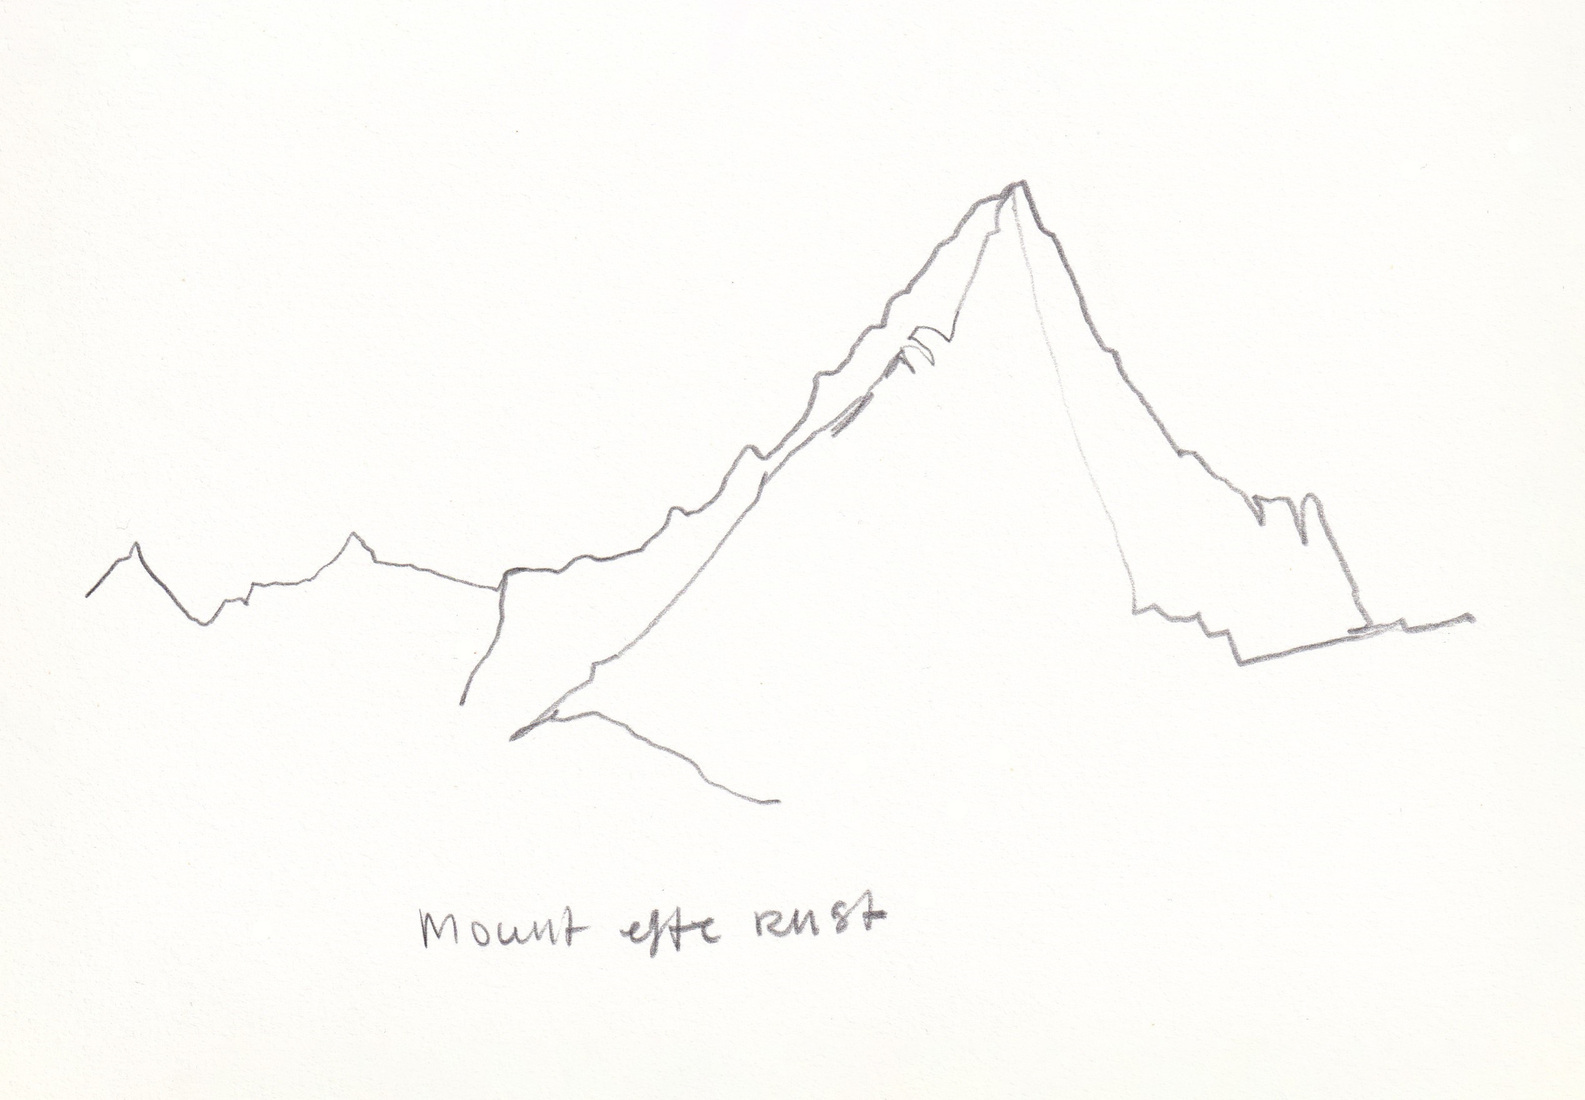 Mount effe rust